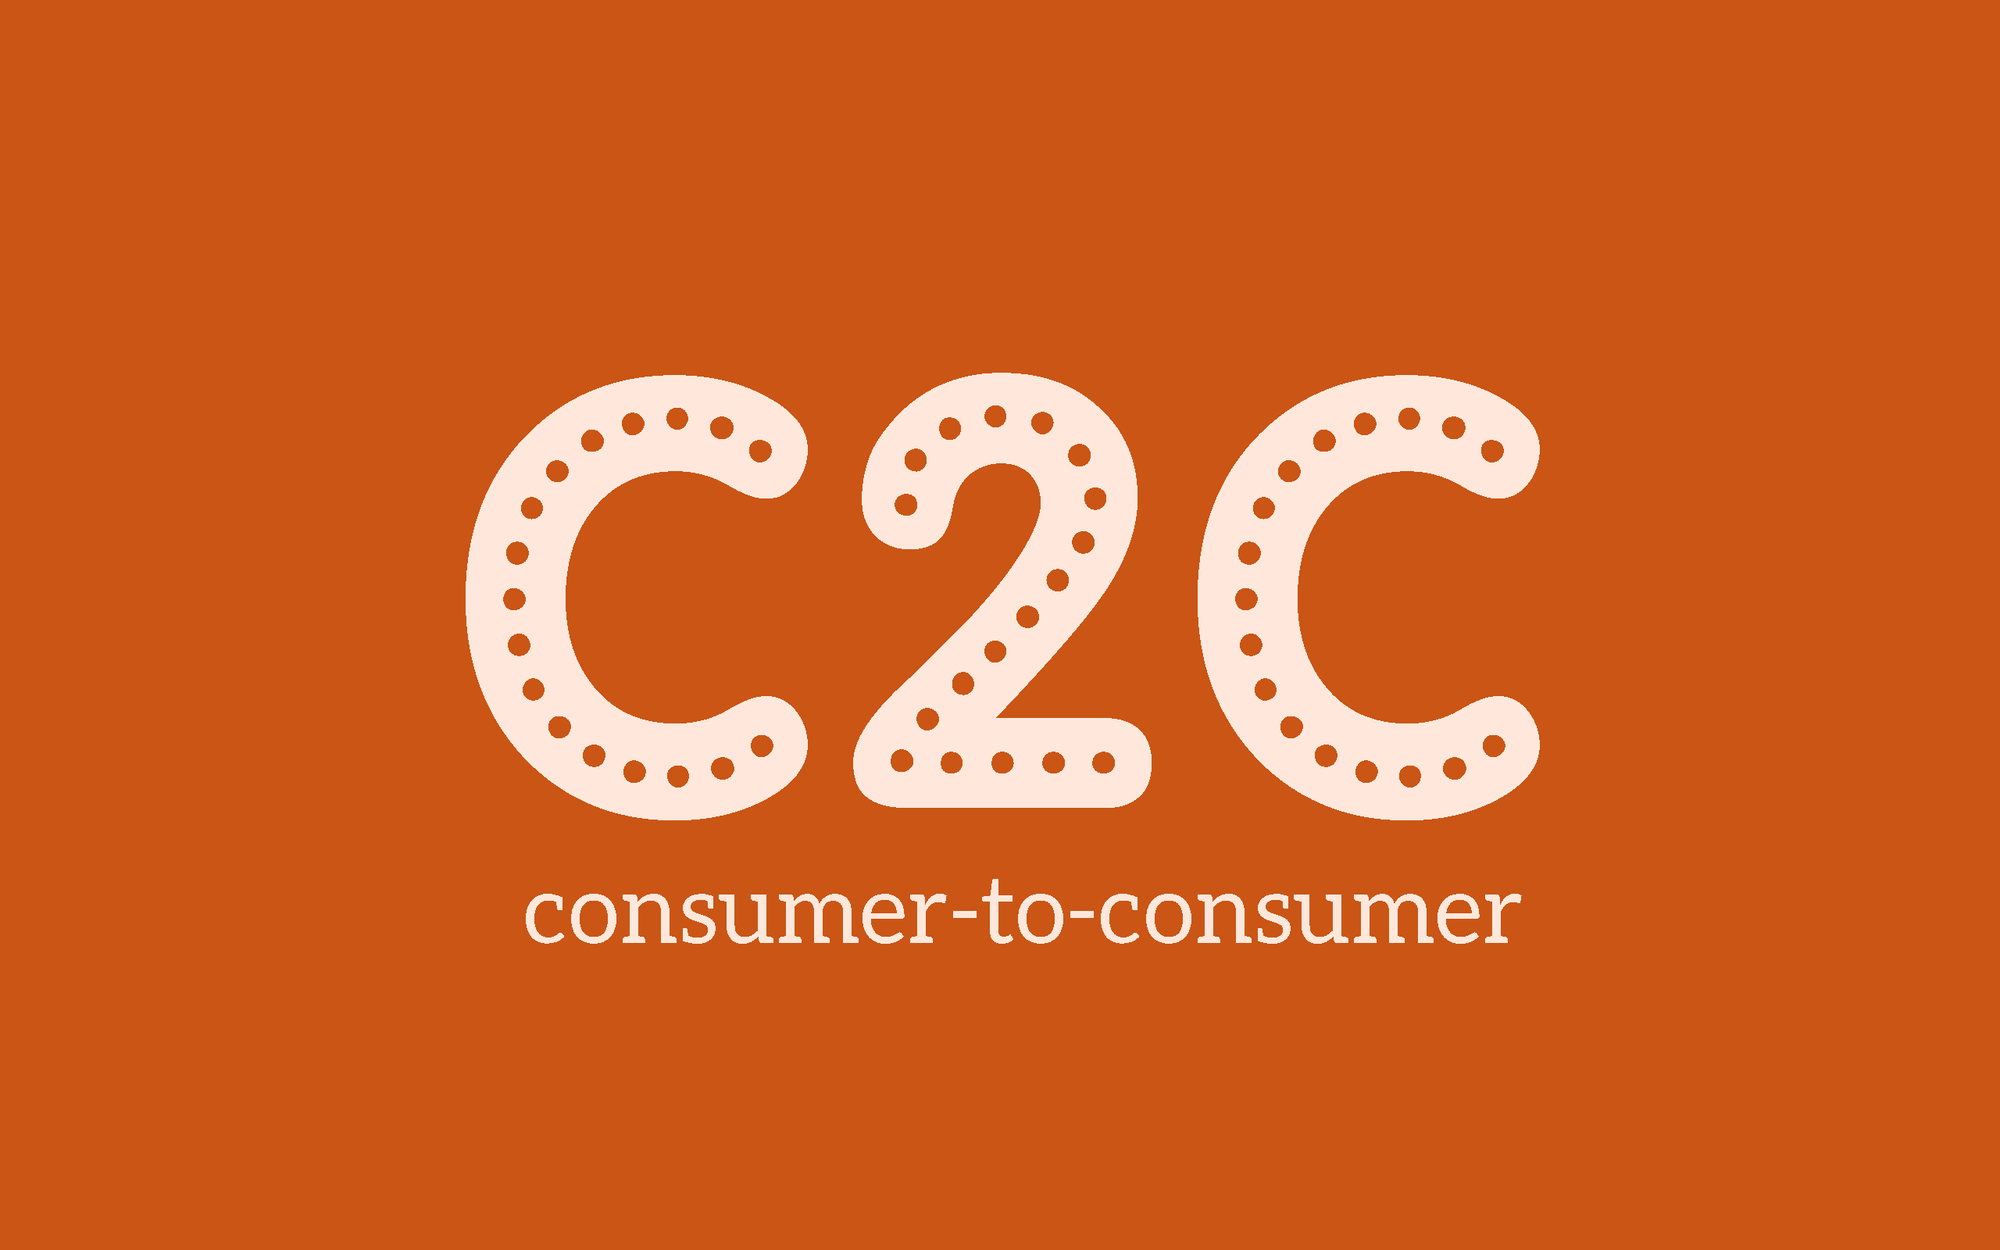 C2C (Consumer to Consumer) là gì? Định nghĩa và ví dụ